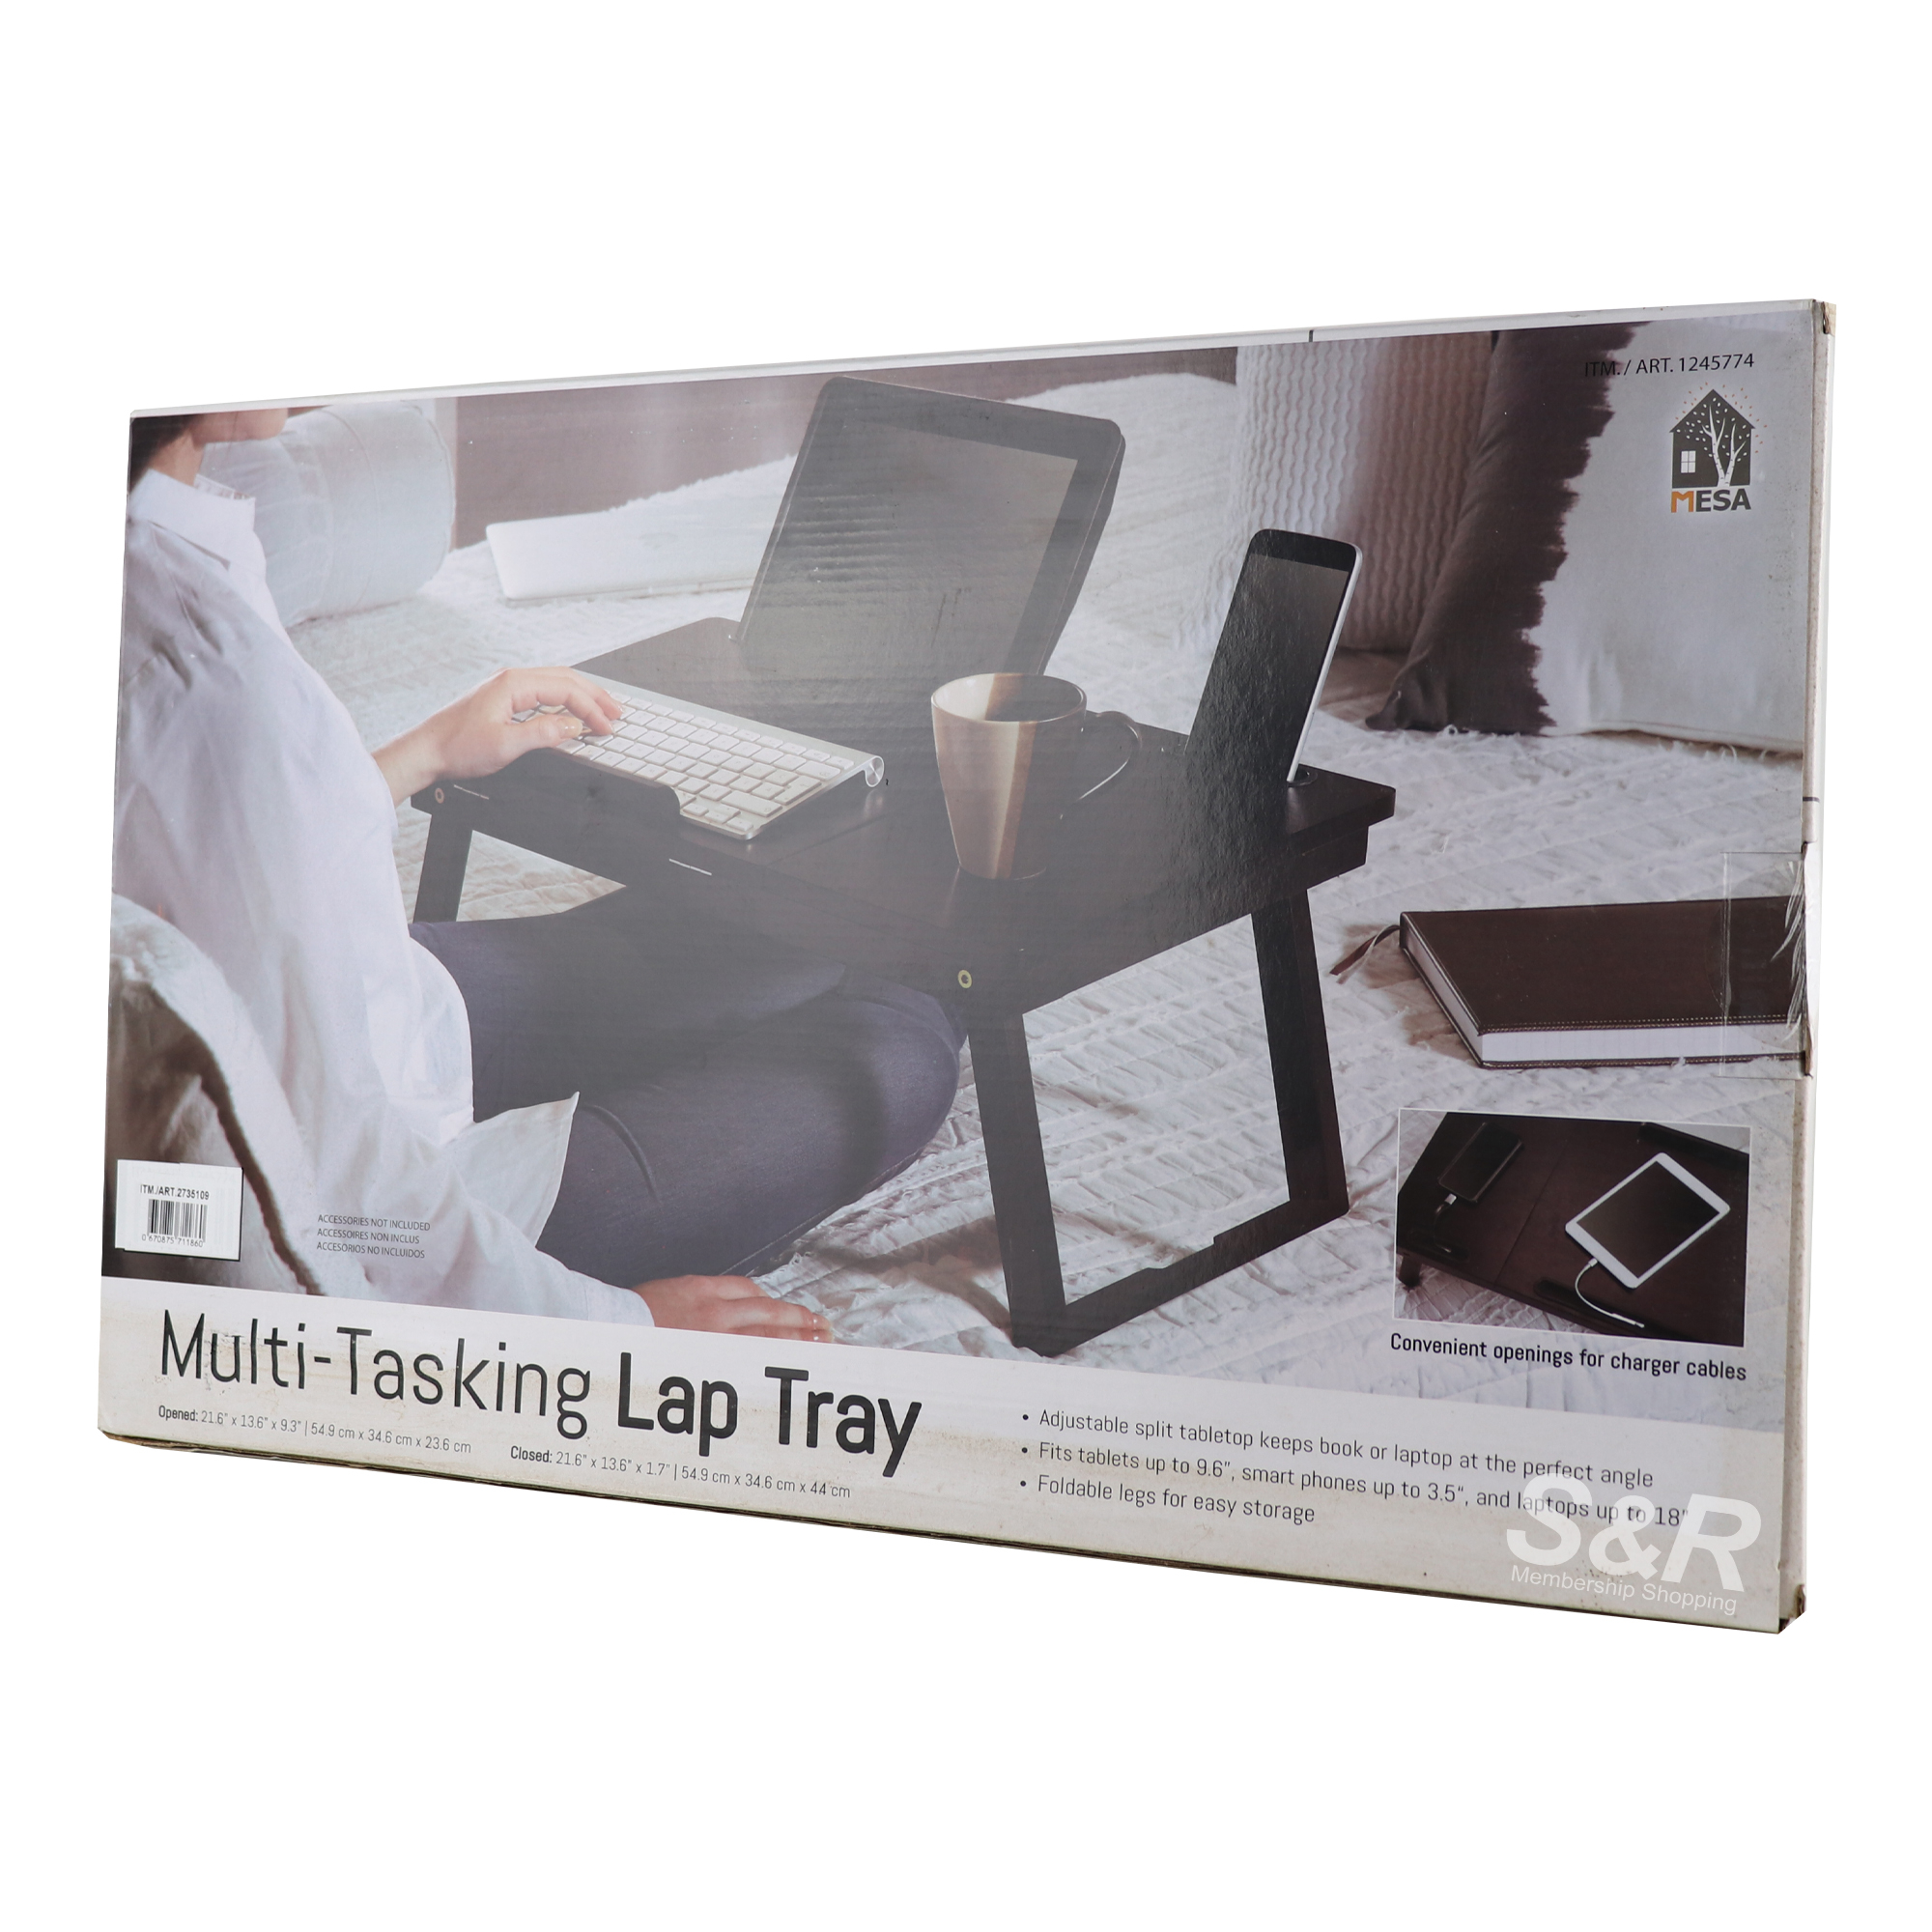 Mesa Multi-Tasking Lap Tray